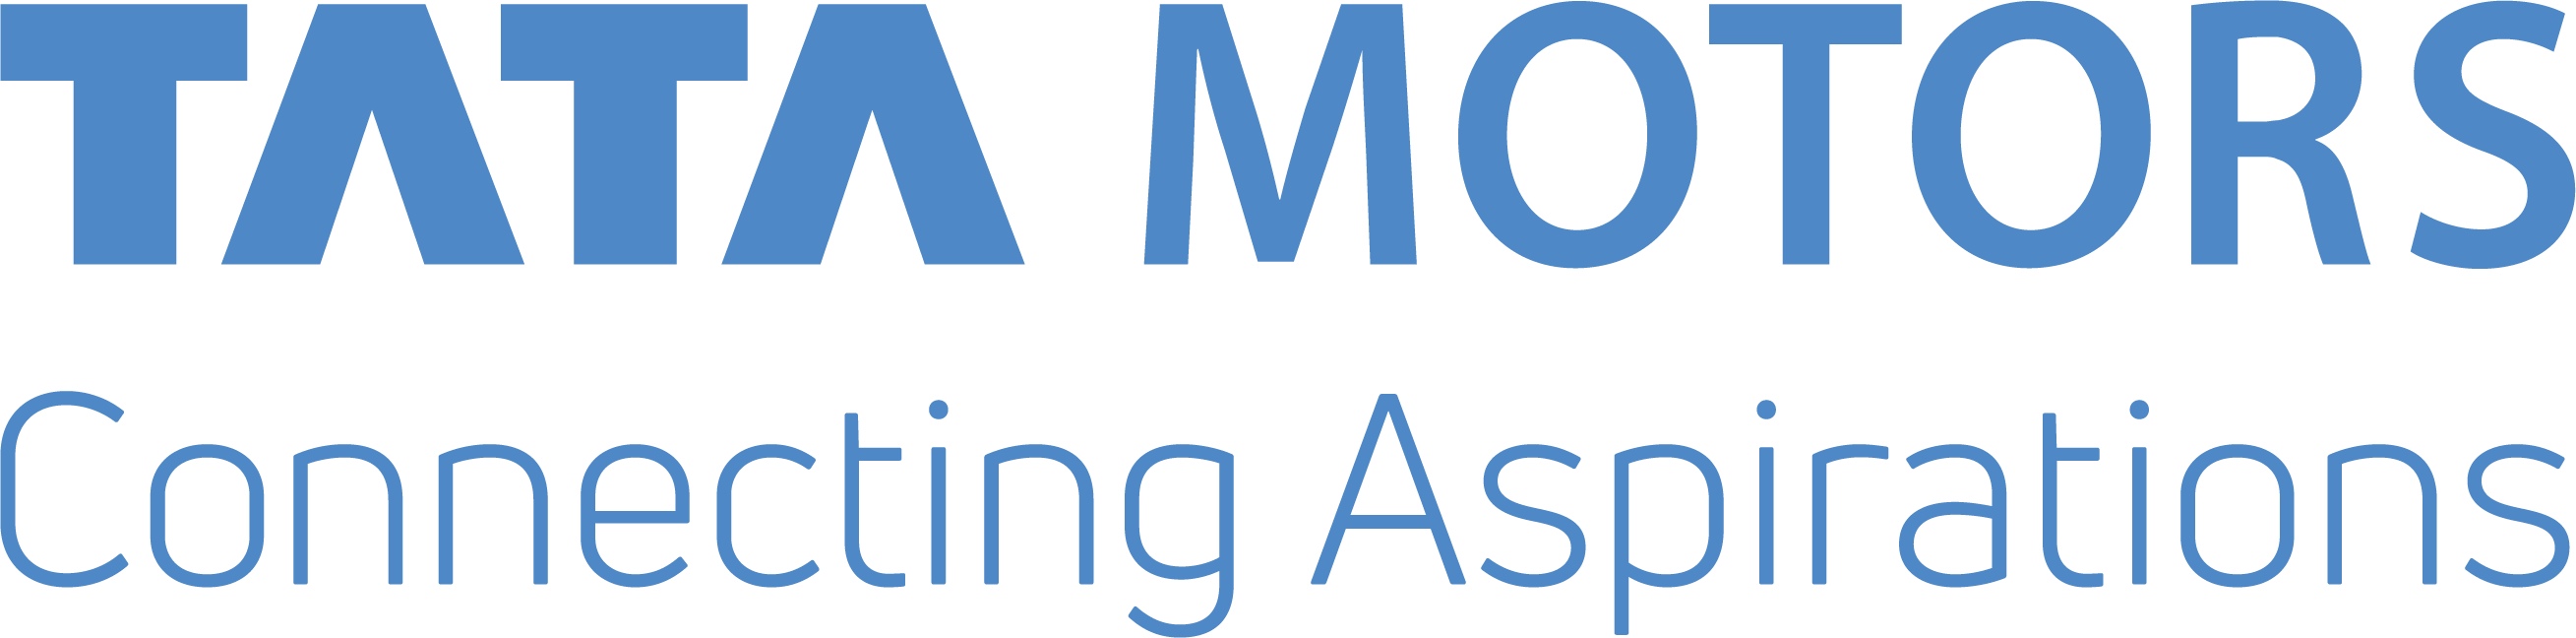 Tata Motors Logo Connecting Aspirations PNG image